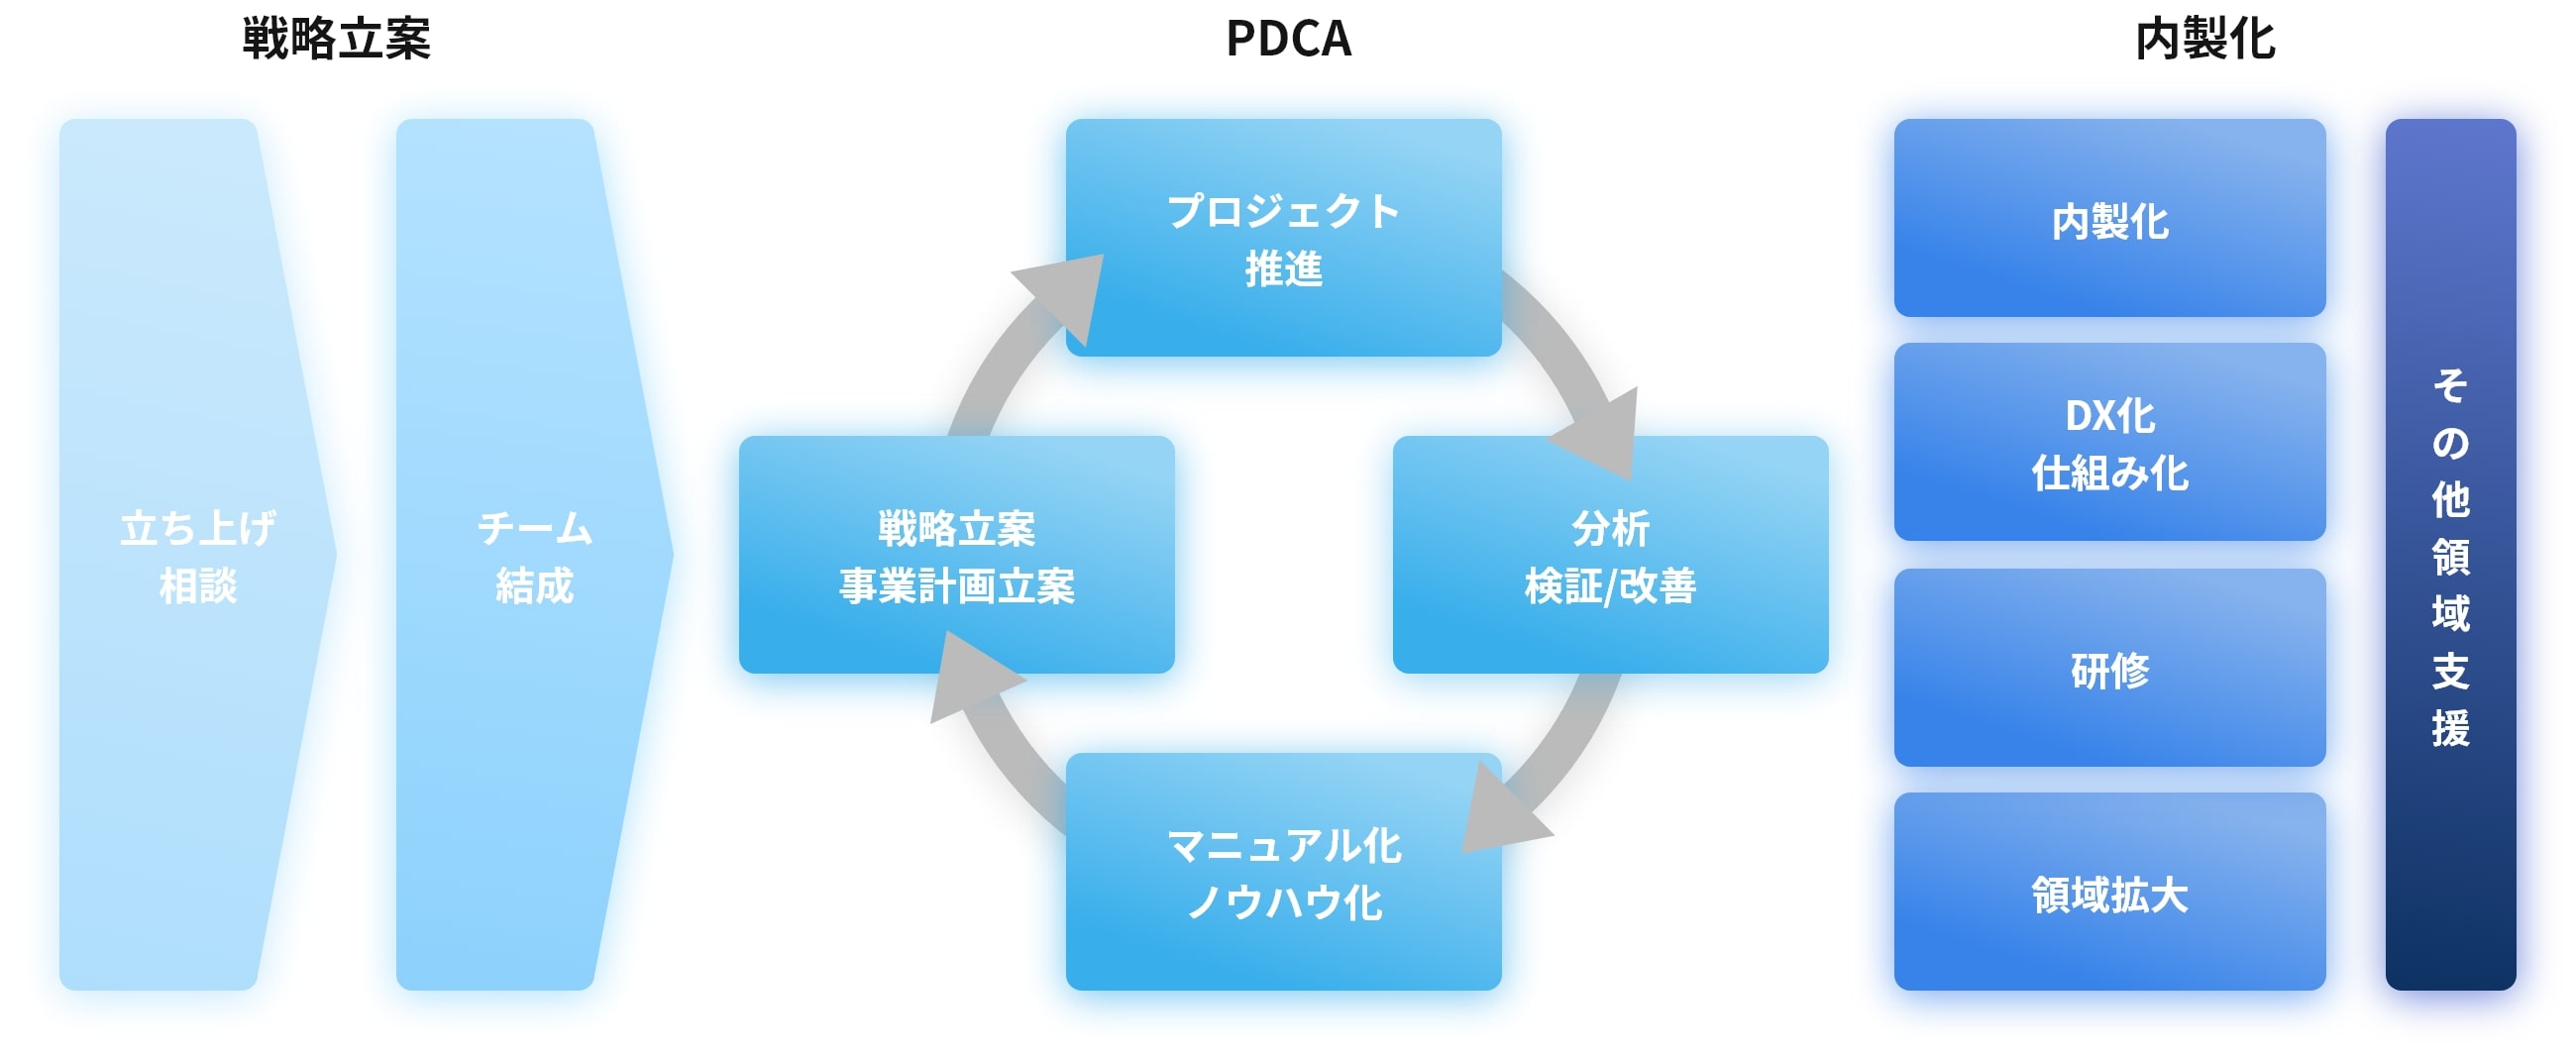 戦略立案 PDCA 内製化